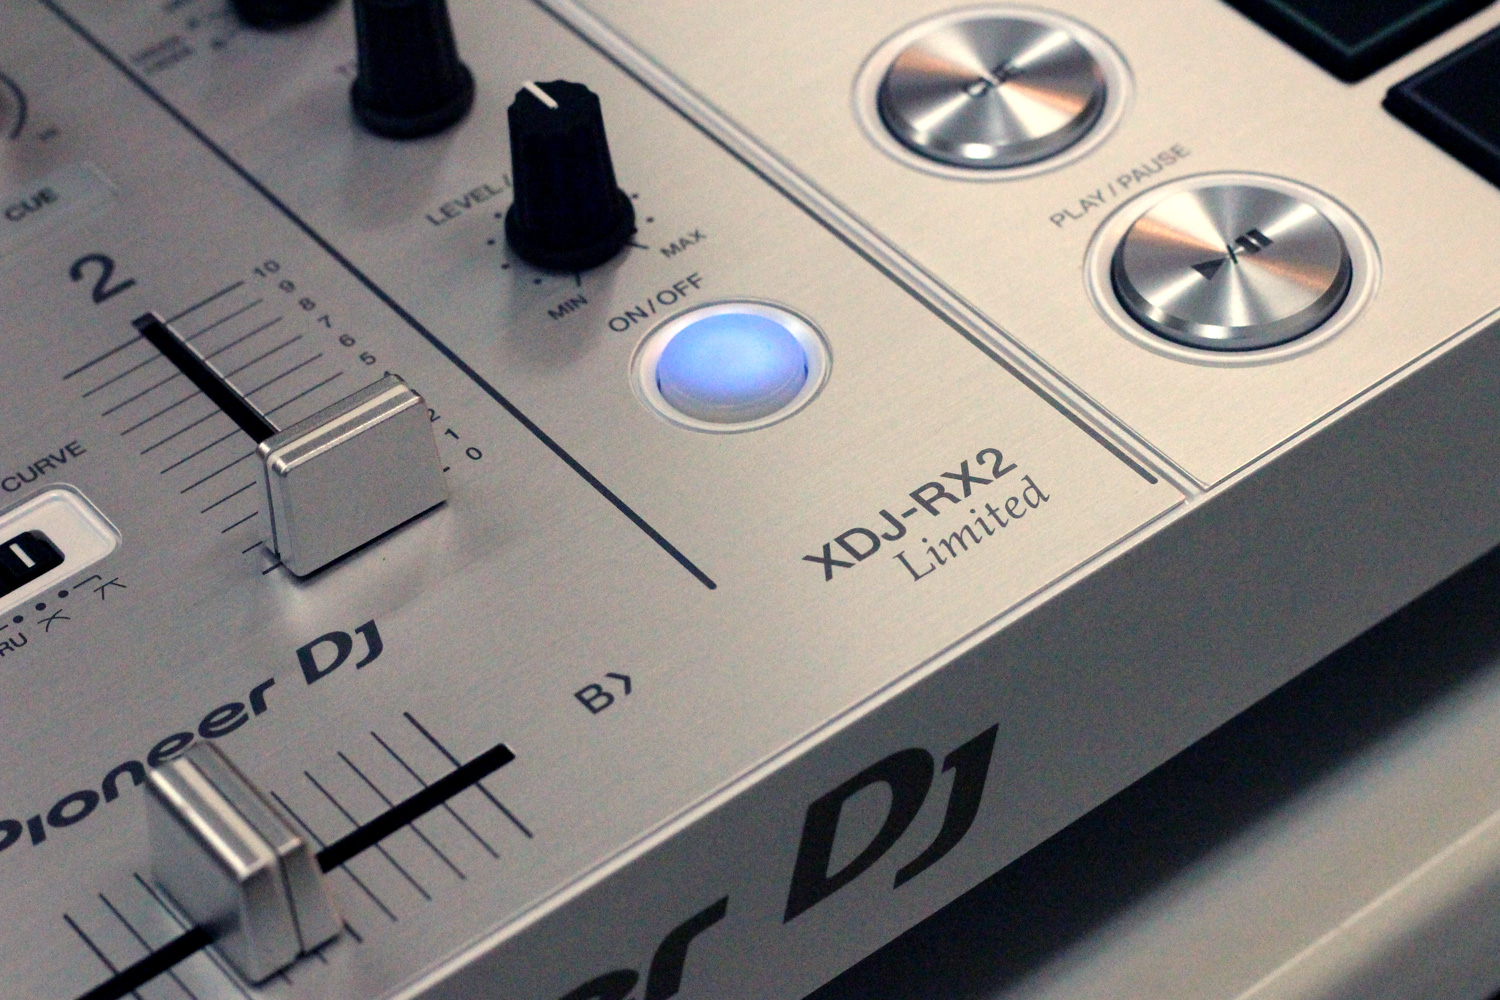 Pioneer DJ XDJ-RX2-W